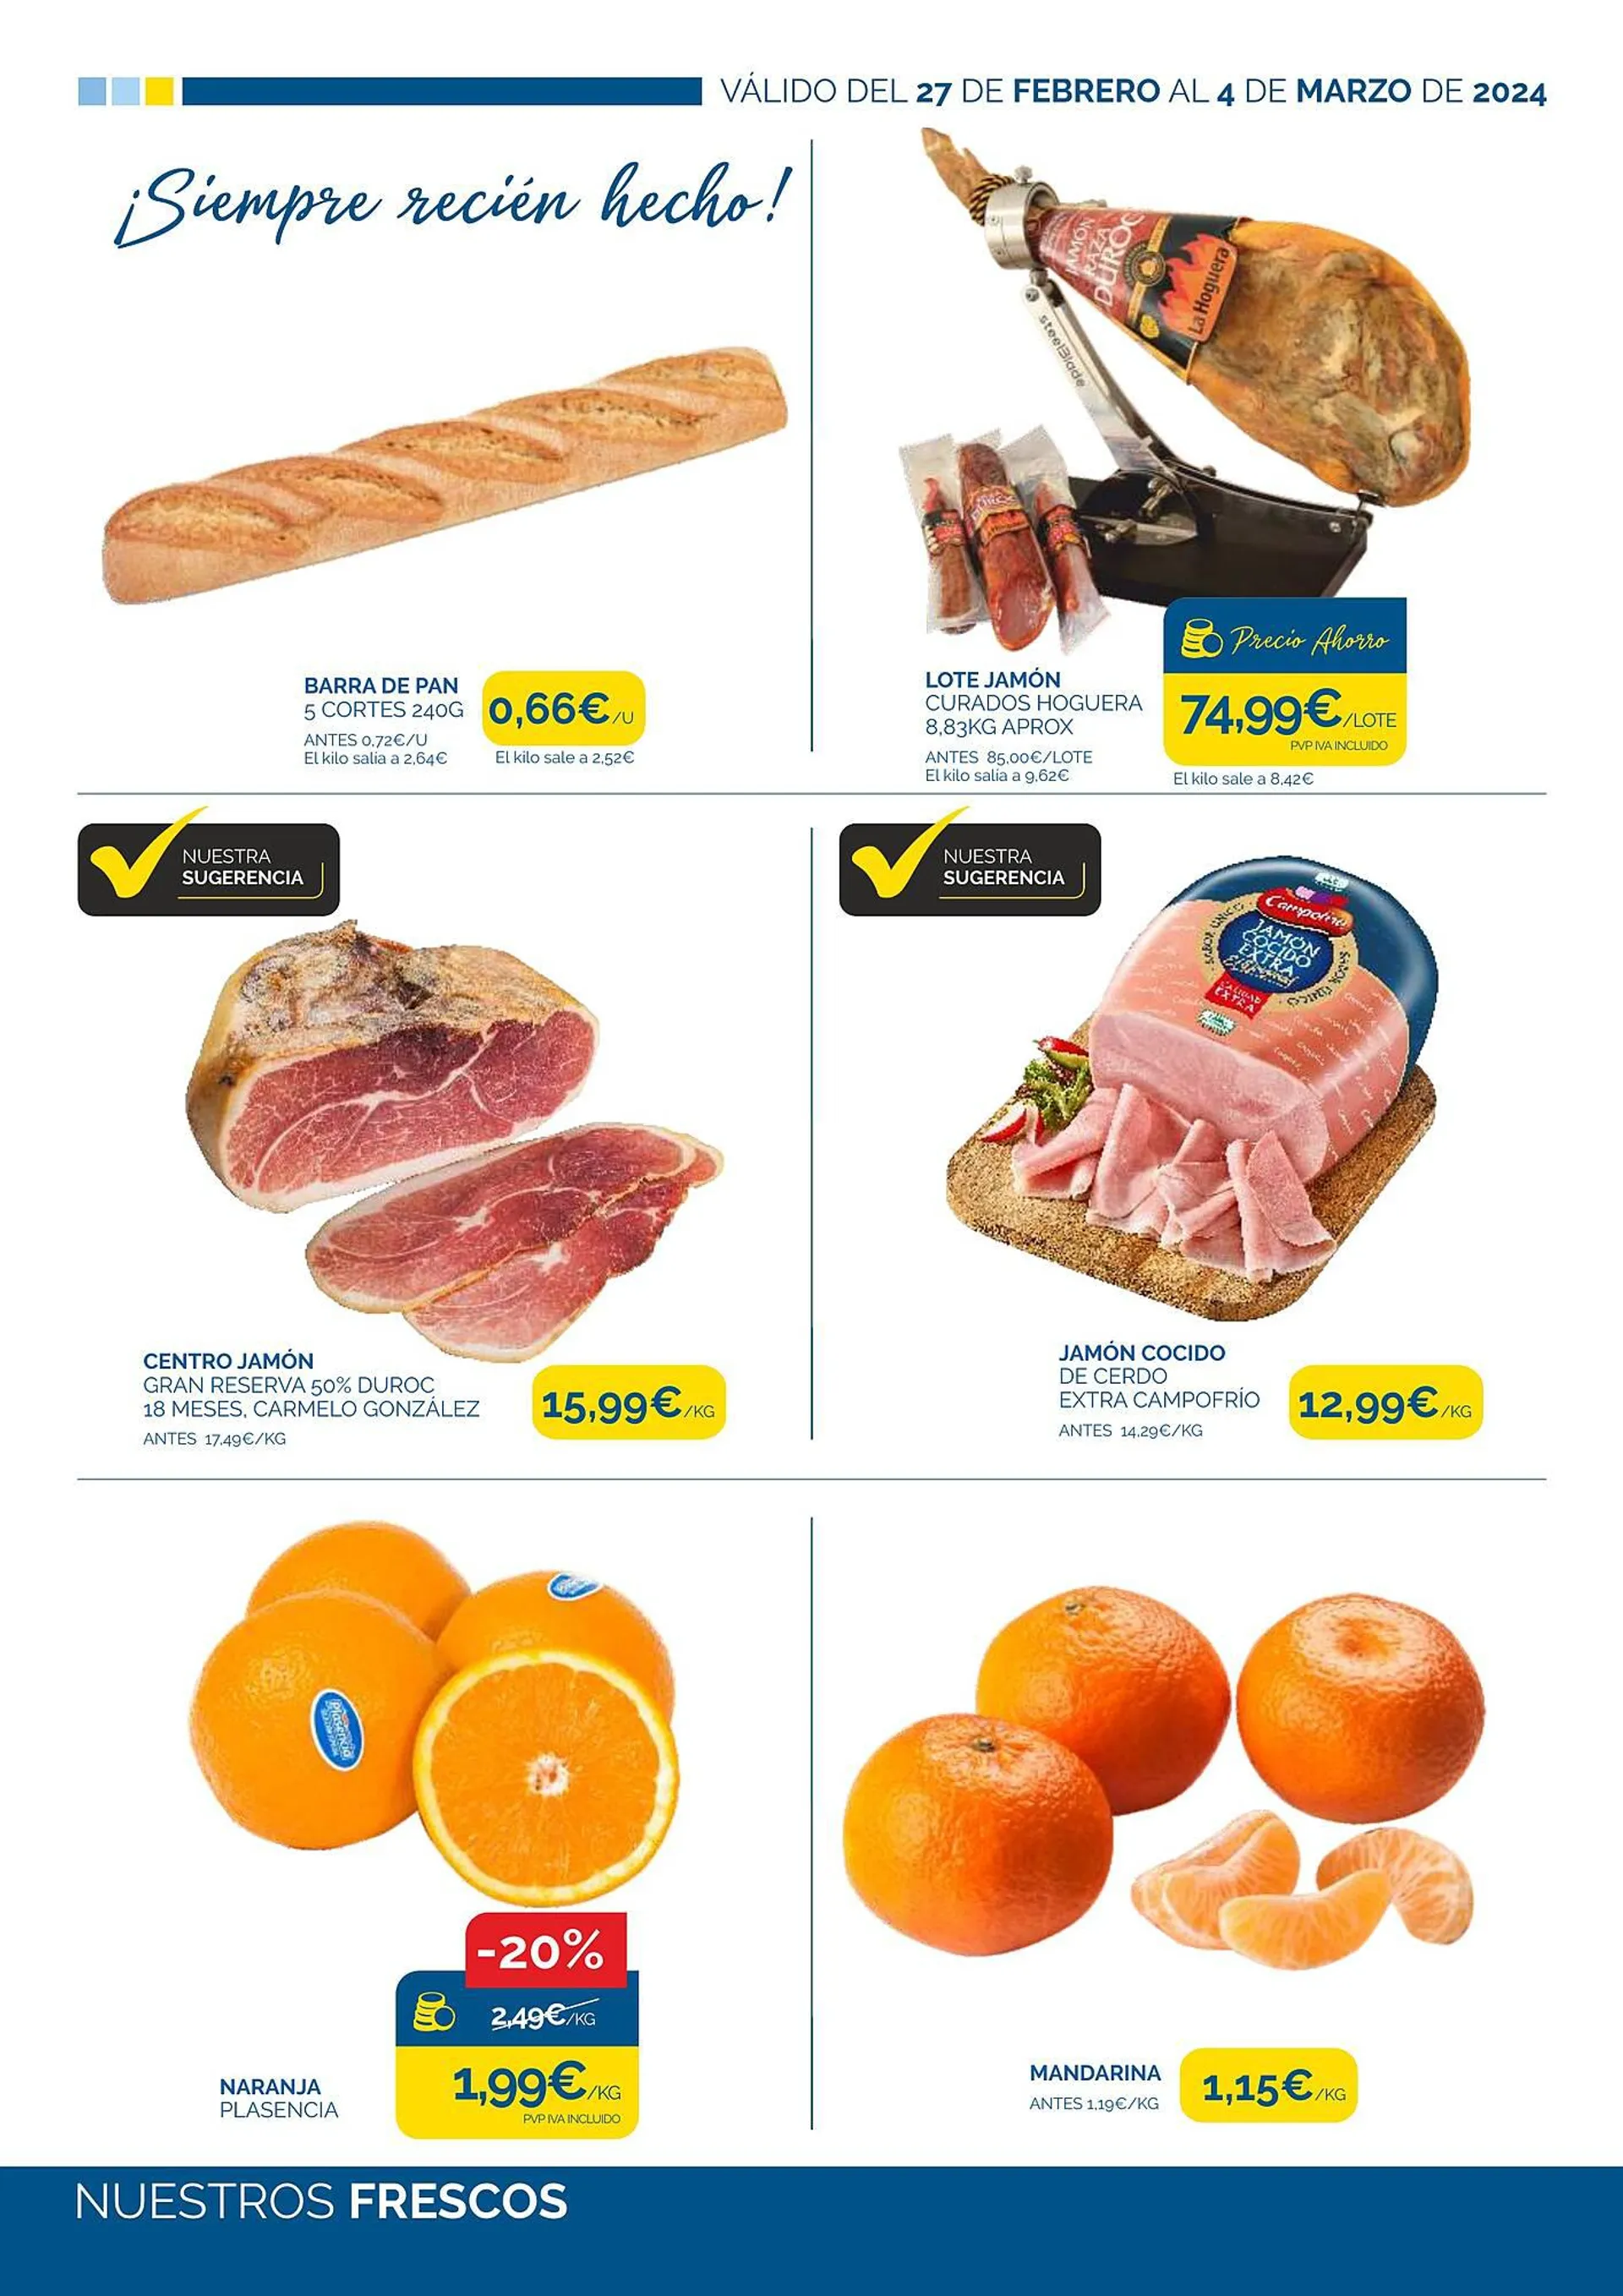 Catálogo de Folleto Supermercados La Despensa 27 de febrero al 4 de marzo 2024 - Página 2